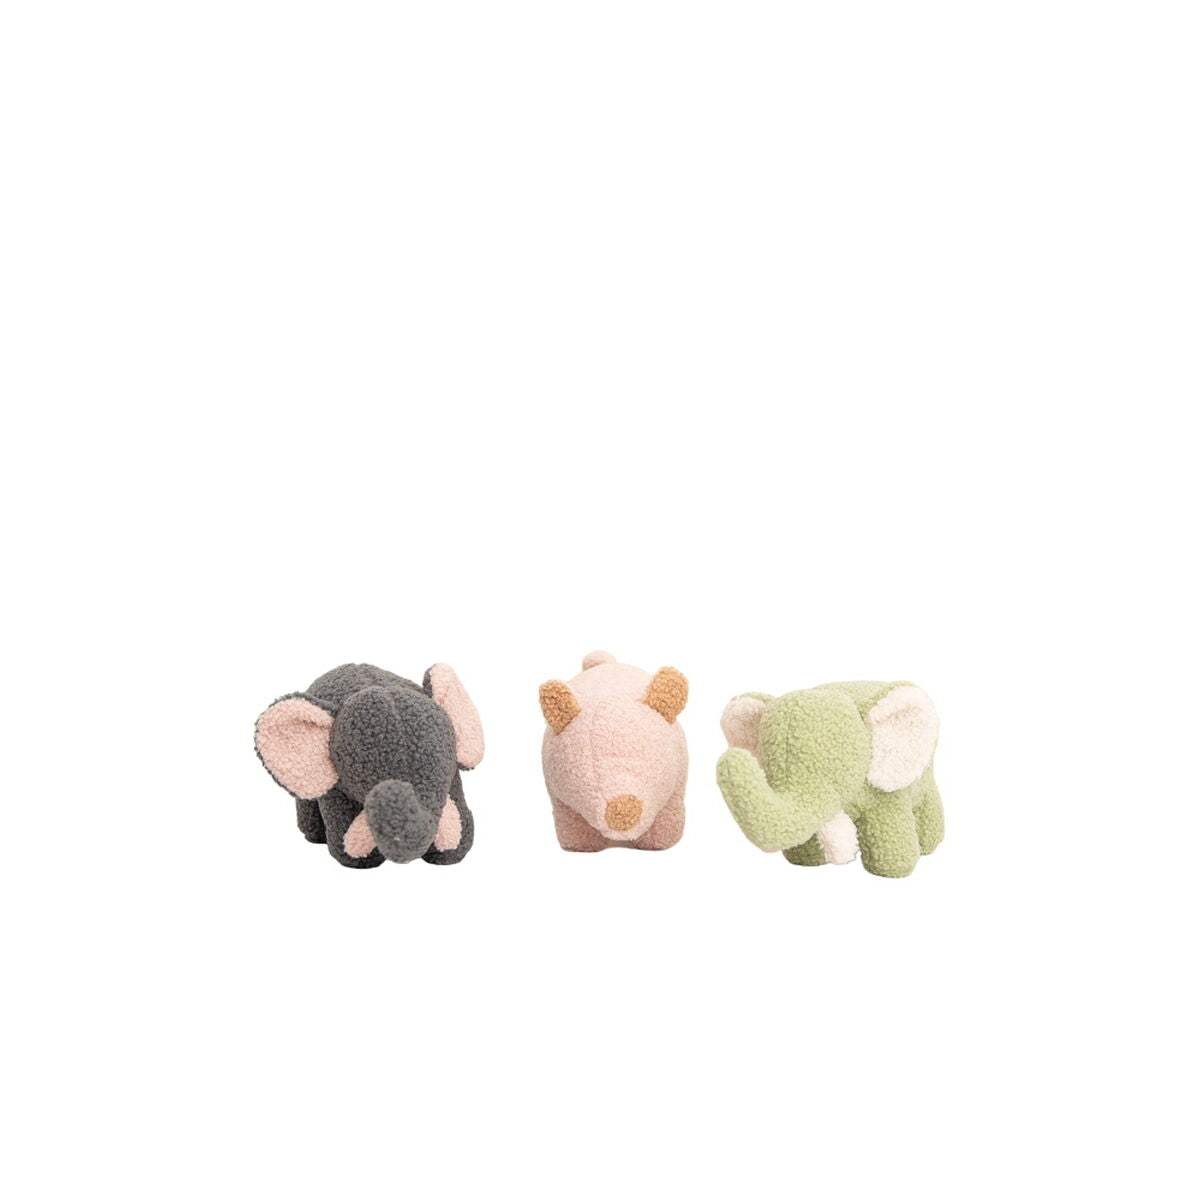 Peluche Crochetts Verde Gris Elefante Cerdo 30 x 13 x 8 cm 3 Piezas